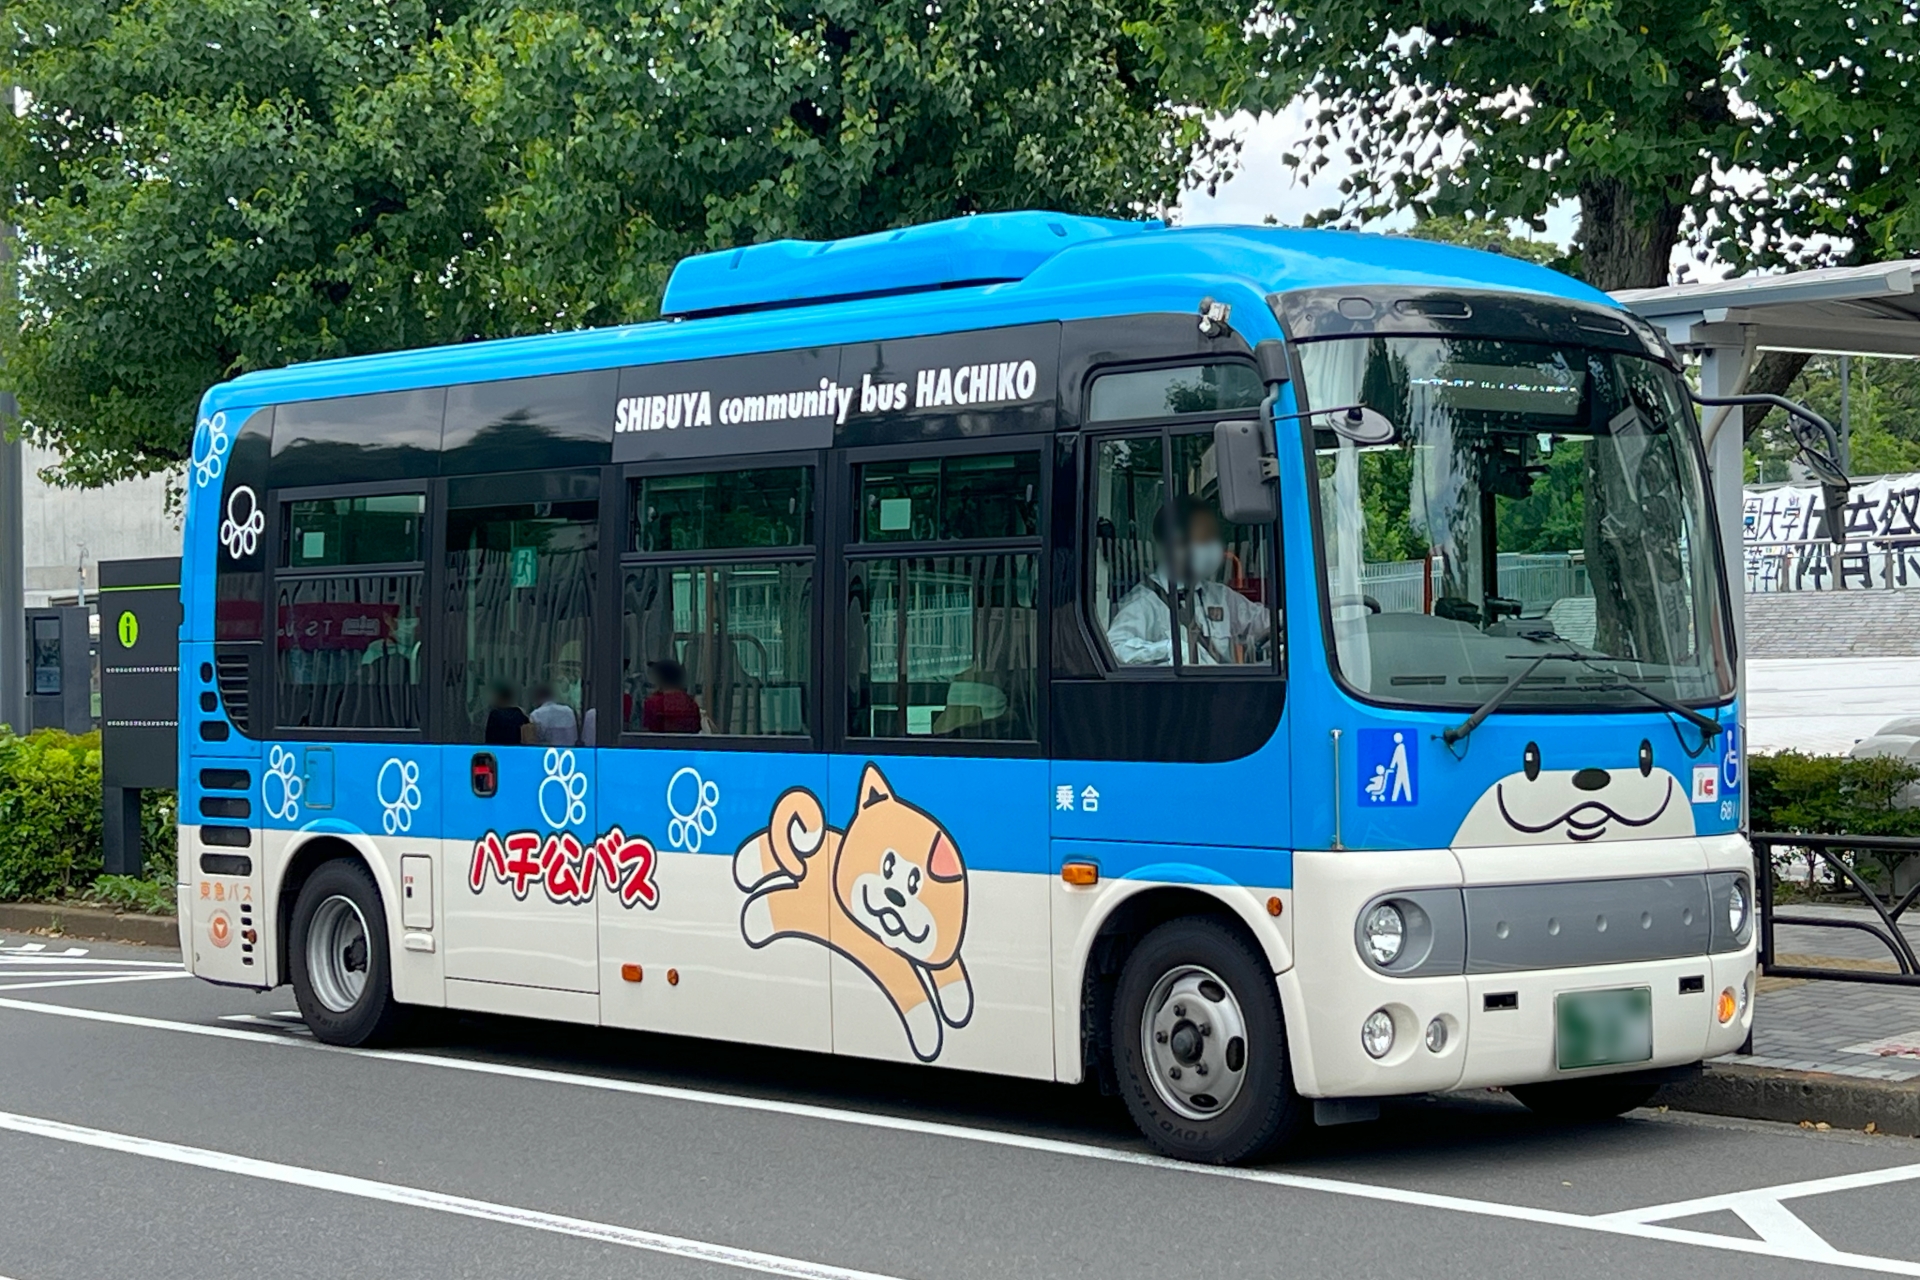 Bus in Japan 